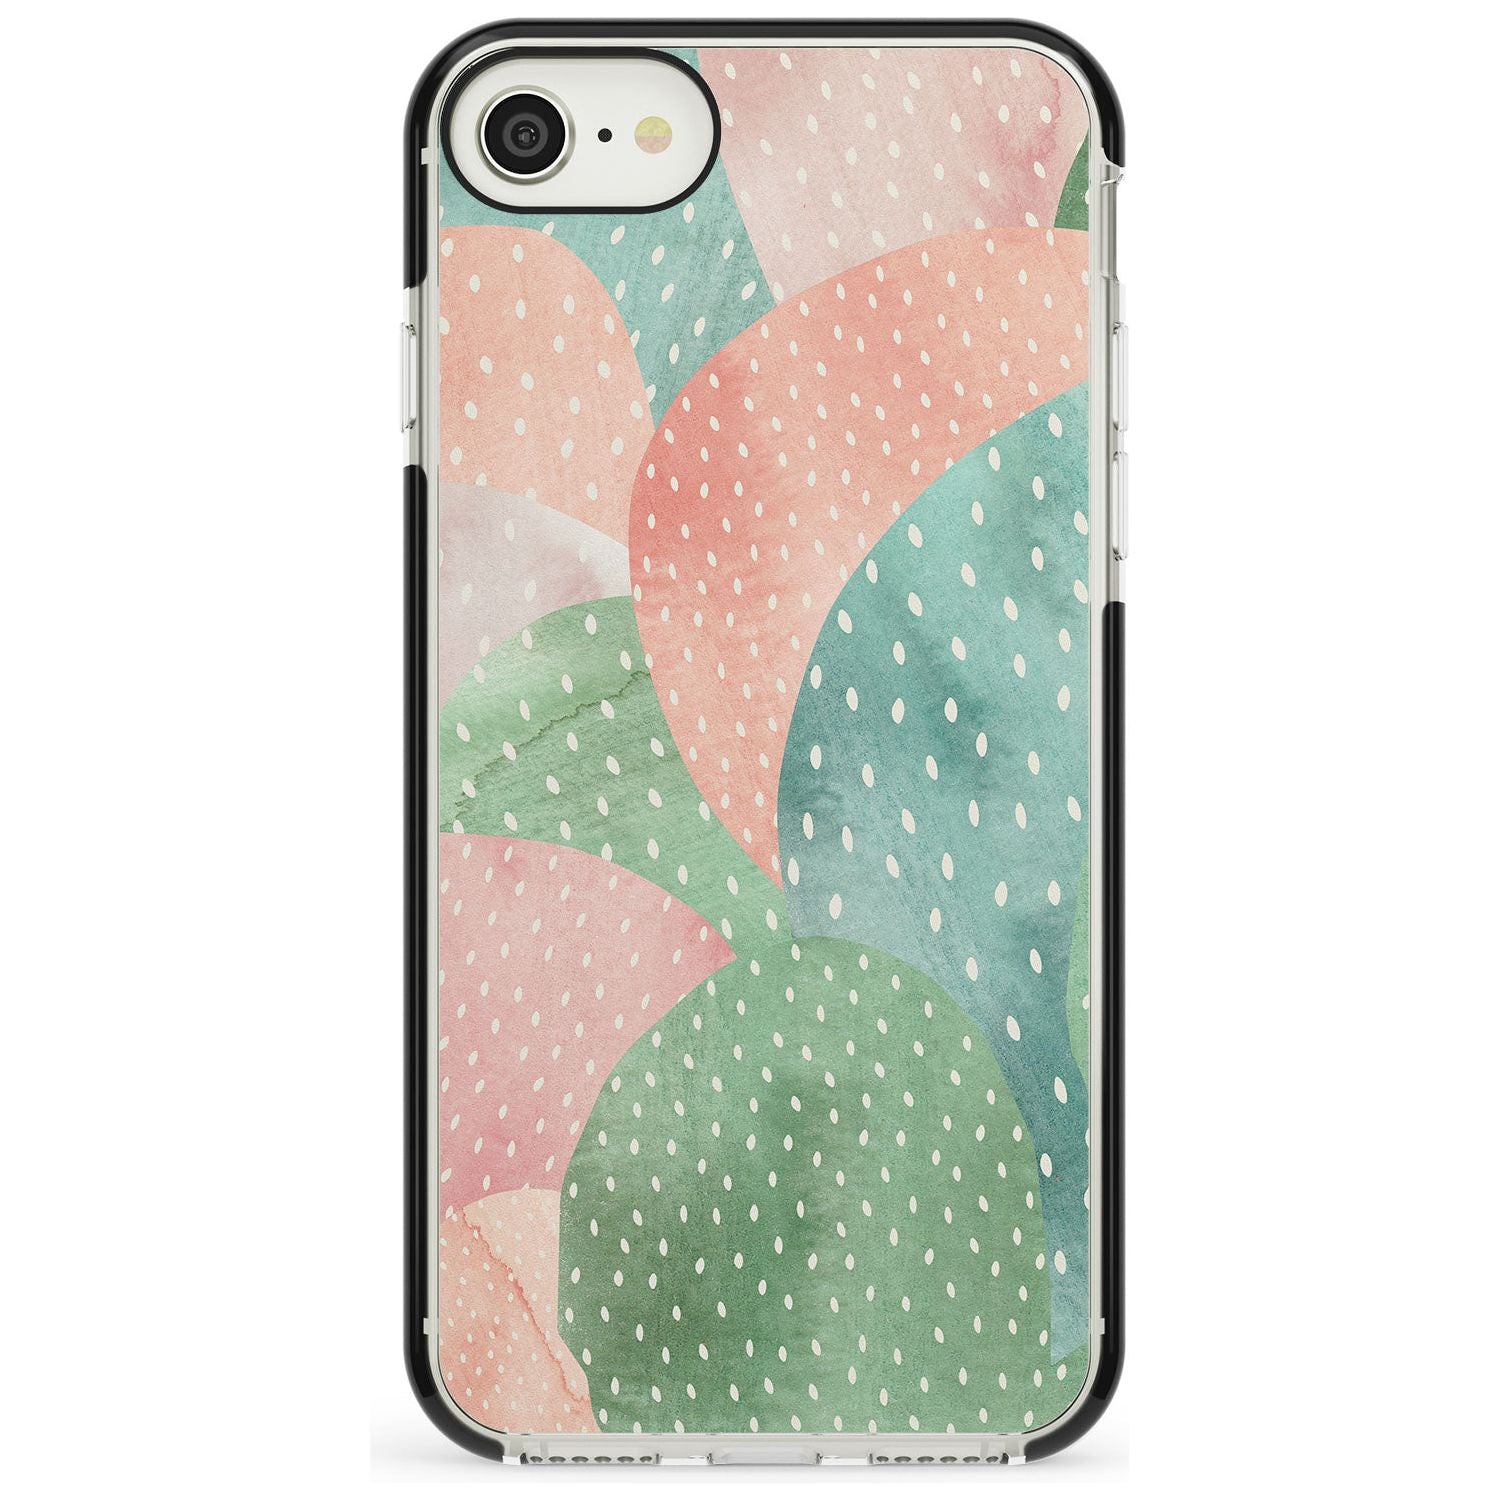 Colourful Close-Up Cacti Design Black Impact Phone Case for iPhone SE 8 7 Plus